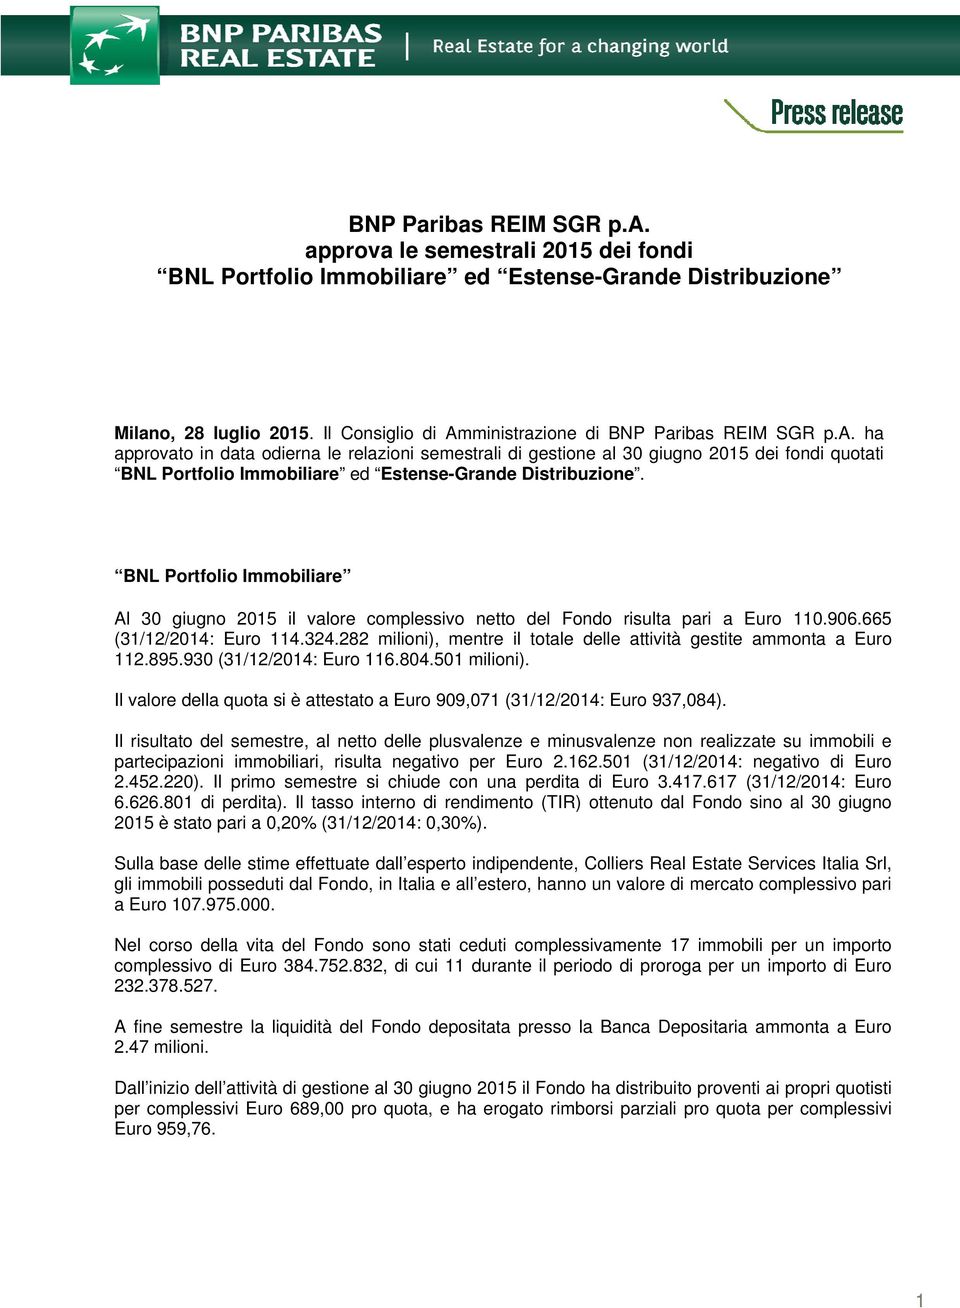 BNL Portfolio Immobiliare Al 30 giugno 2015 il valore complessivo netto del Fondo risulta pari a Euro 110.906.665 (31/12/2014: Euro 114.324.